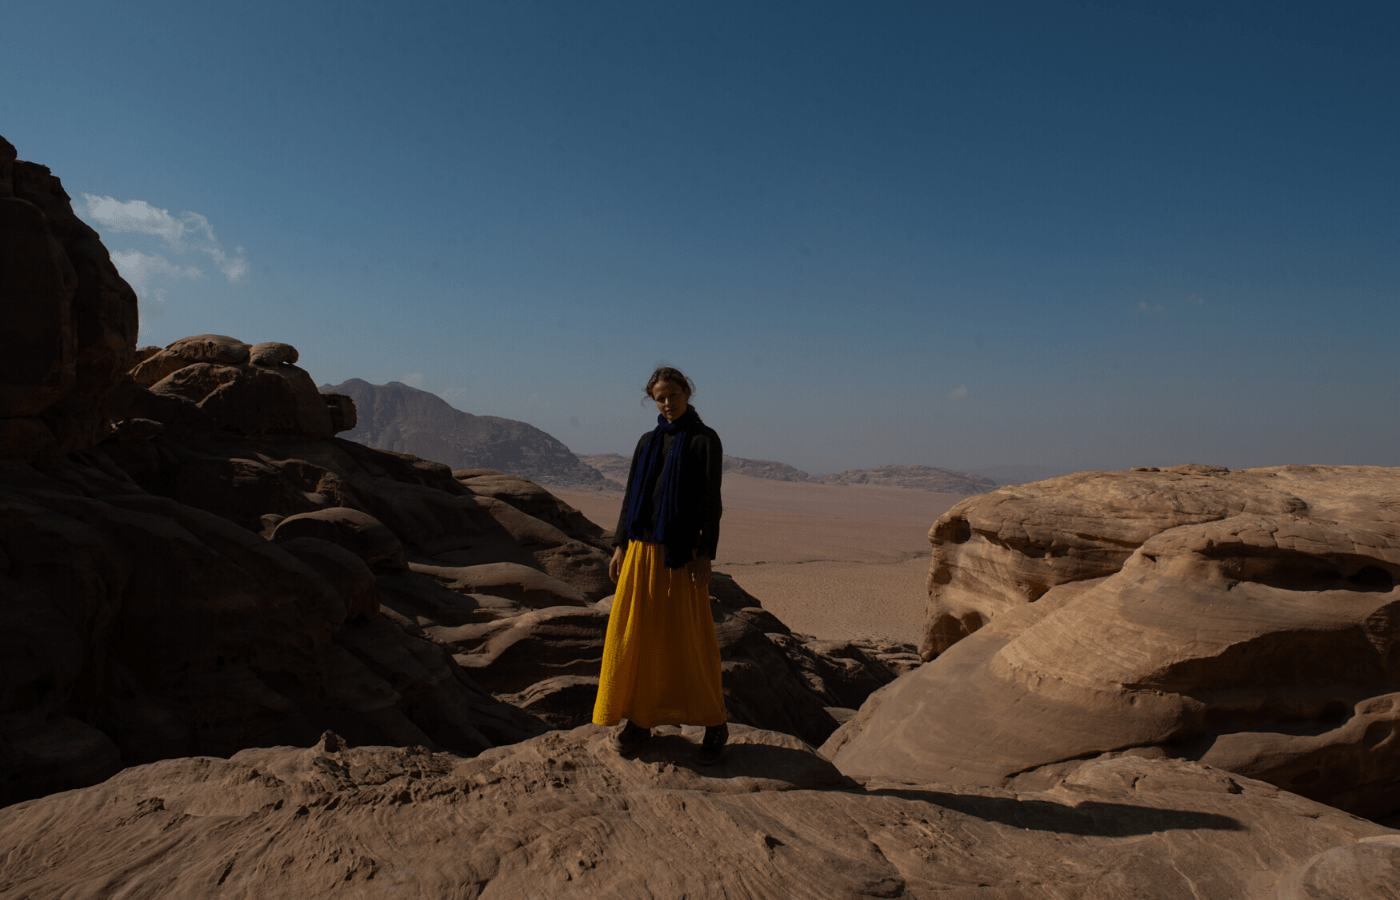 Retreat, meditation, healing in the desert of Wadi Rum, Jordan